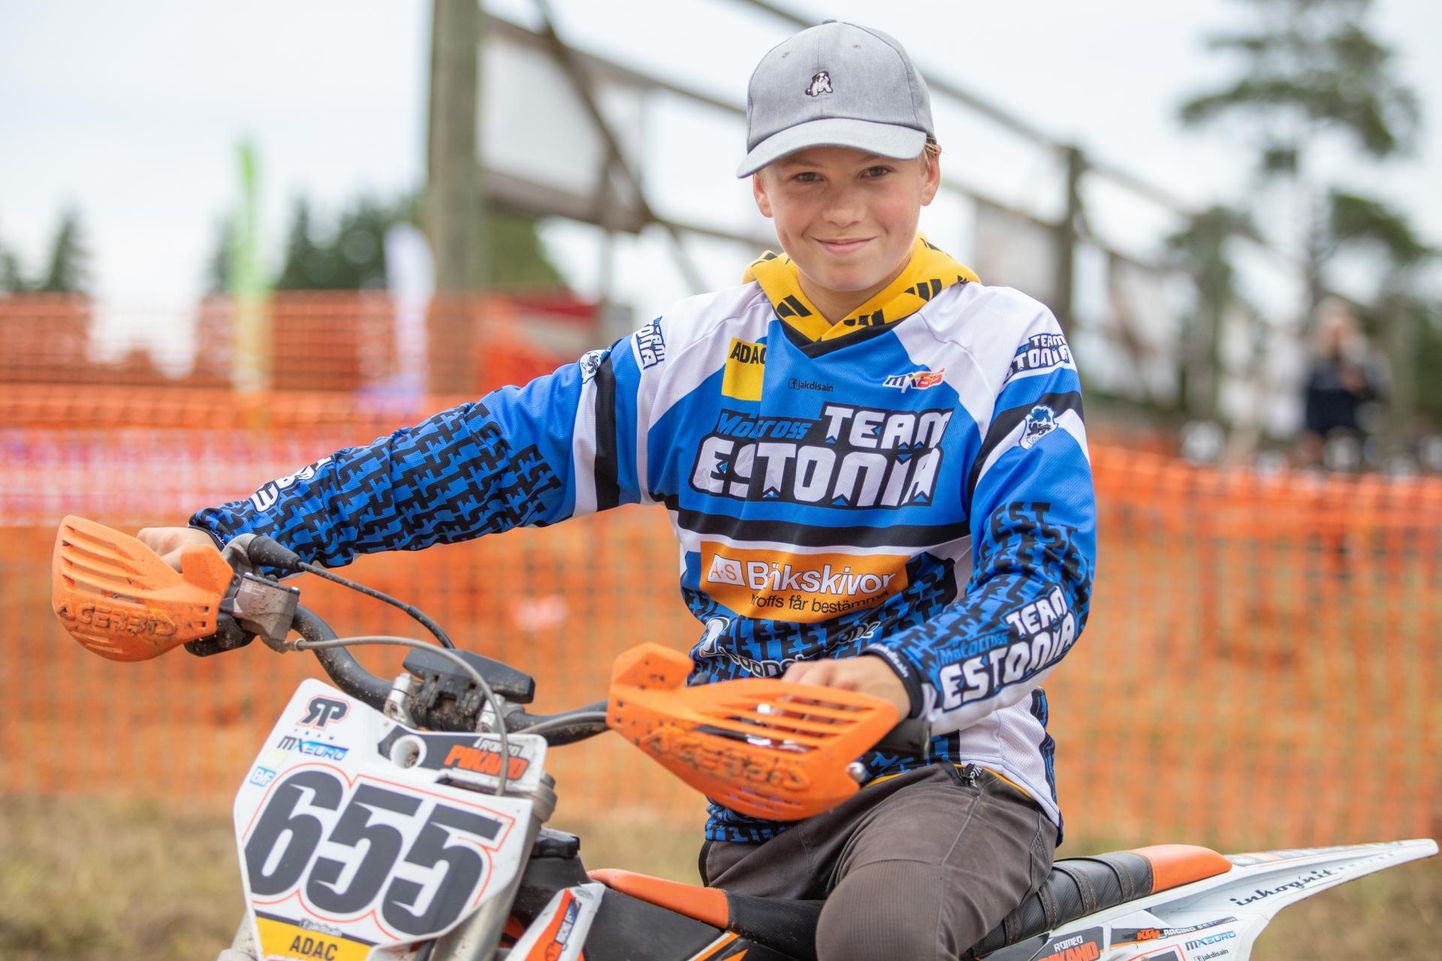 Viljandi motospordiklubi sõitja Romeo Pikand võttis juuni lõpus Langel Eesti meistrivõistluste teisel etapil oma klassis kindla võidu. Sellele järgnes seitsmes koht Saksamaa meistrivõistlustelt.